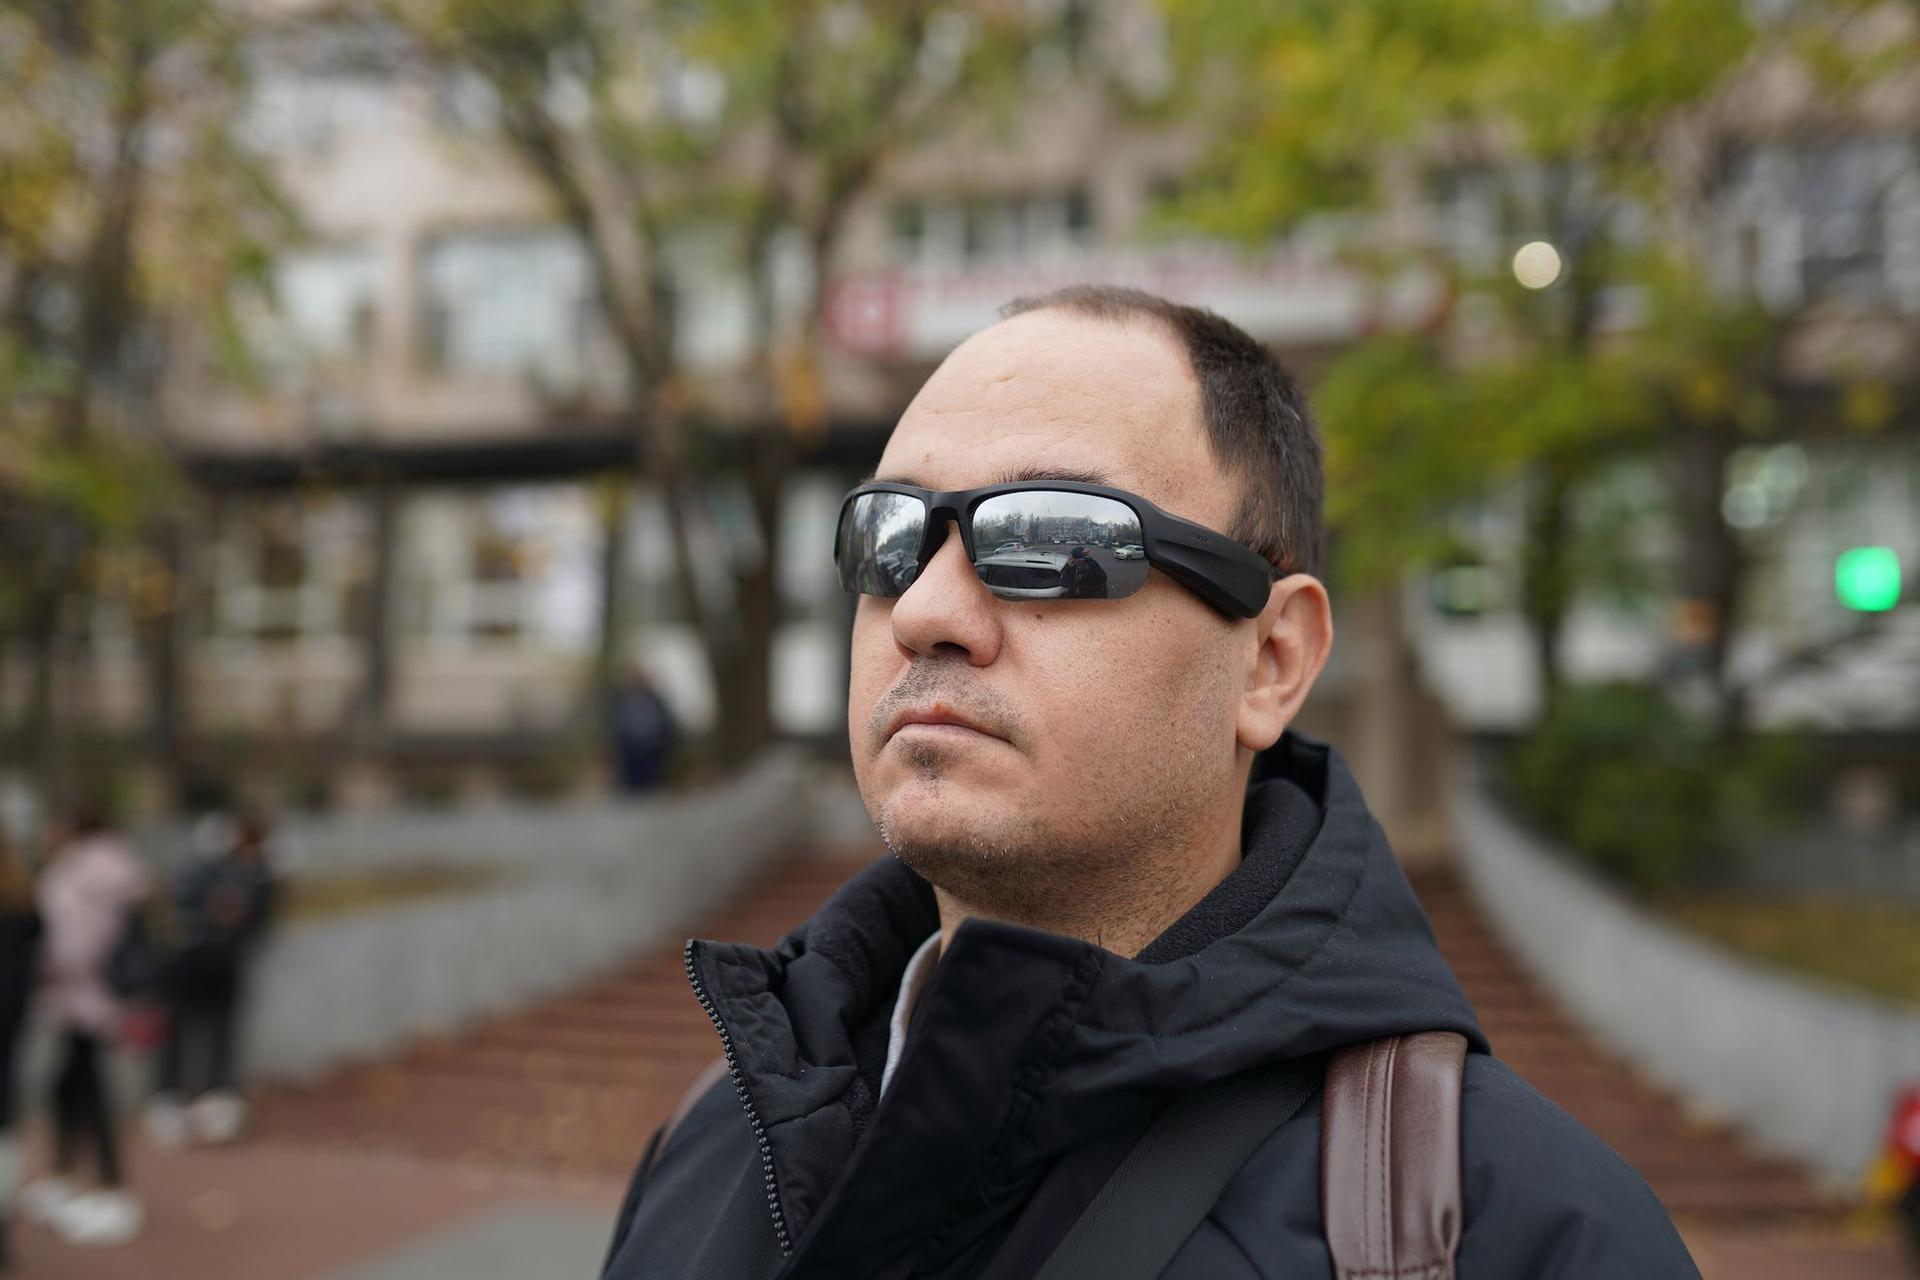 Ochelarii lui Ionuț sunt conectați la Lazarillo, o aplicație bazată pe GPS care îi spune ce se află în jurul lui. Foto: Andreea Câmpeanu